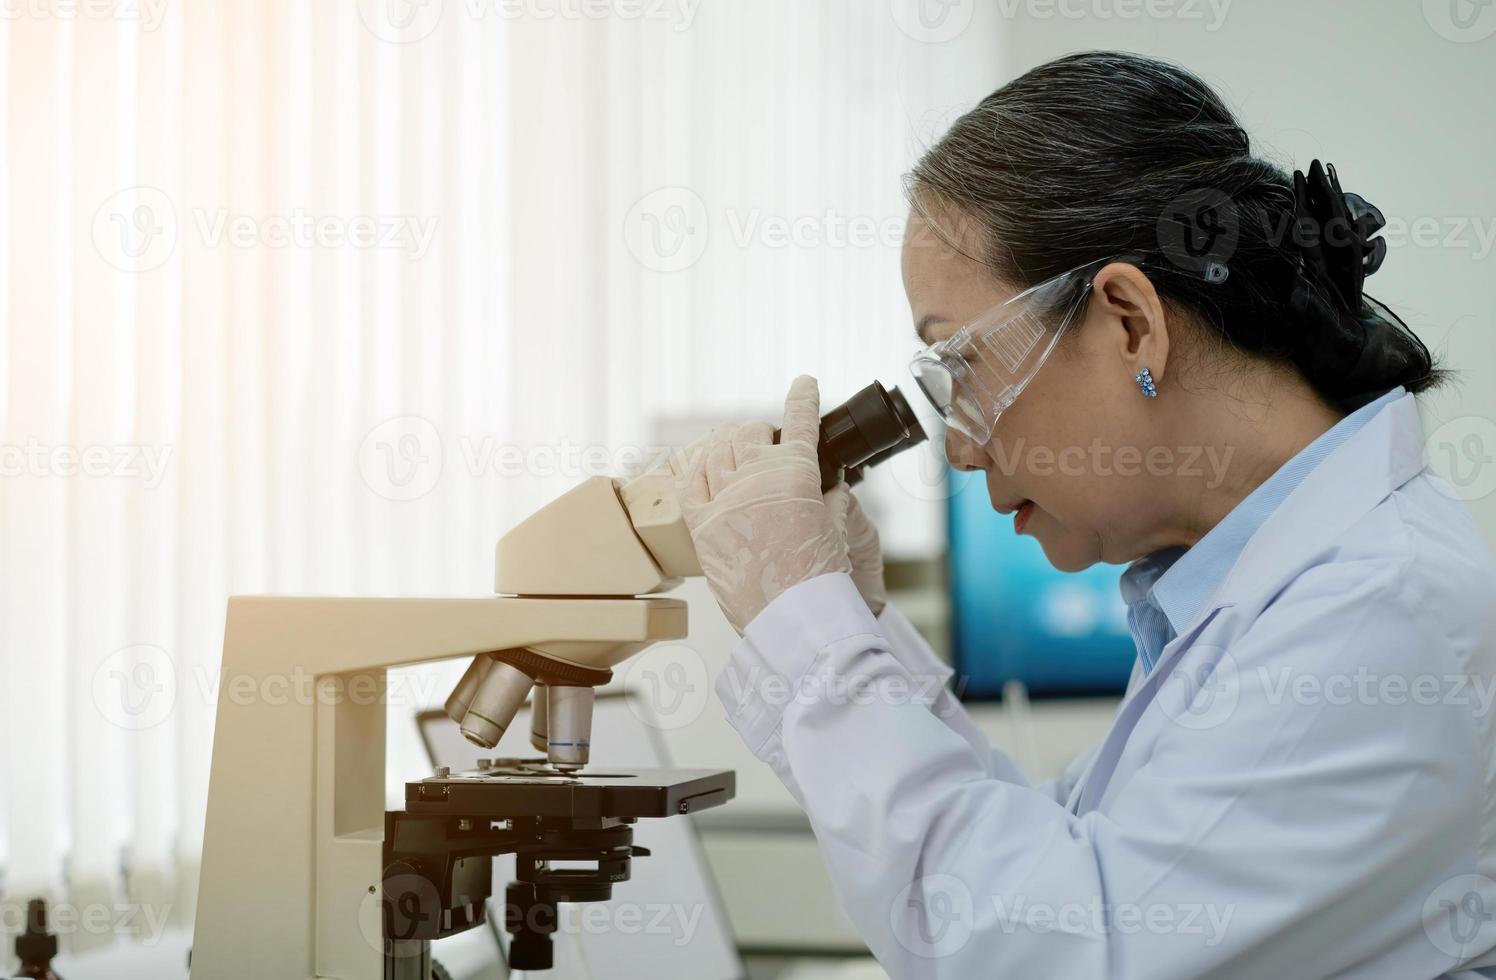 medizinisches entwicklungslabor wissenschaftlerin, die unter mikroskop schaut, analysiert petrischalenprobe. im hintergrund großes pharmazeutisches labor mit spezialisten für medizin, biotechnologieforschung foto